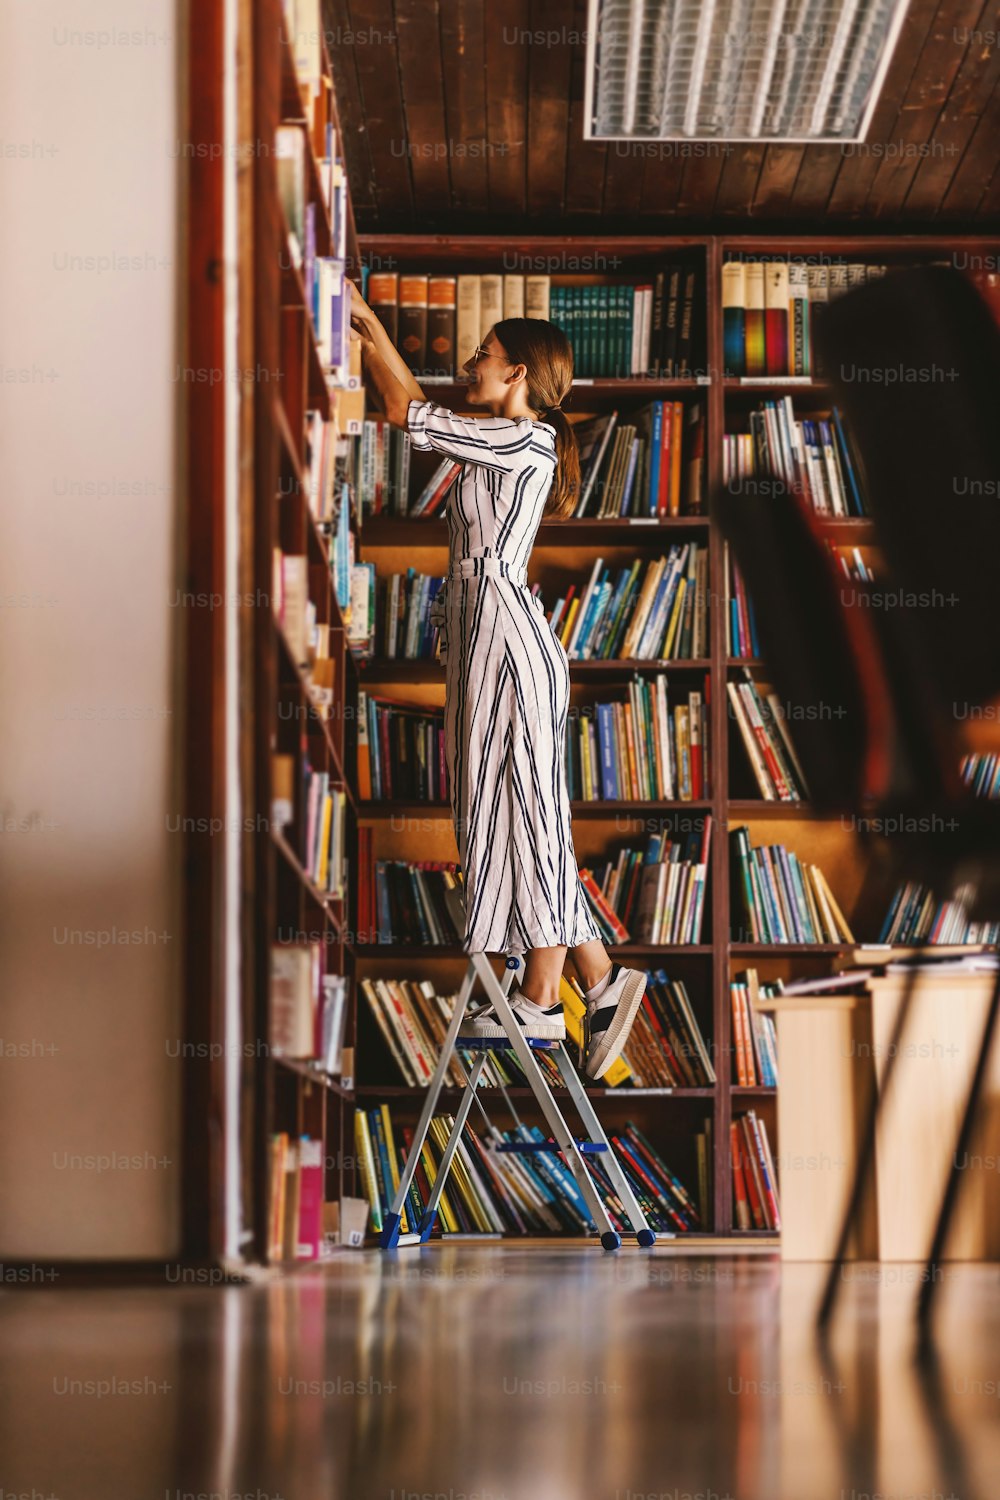 De cuerpo entero de joven bibliotecario atractivo de pie en la escalera y buscando un libro.